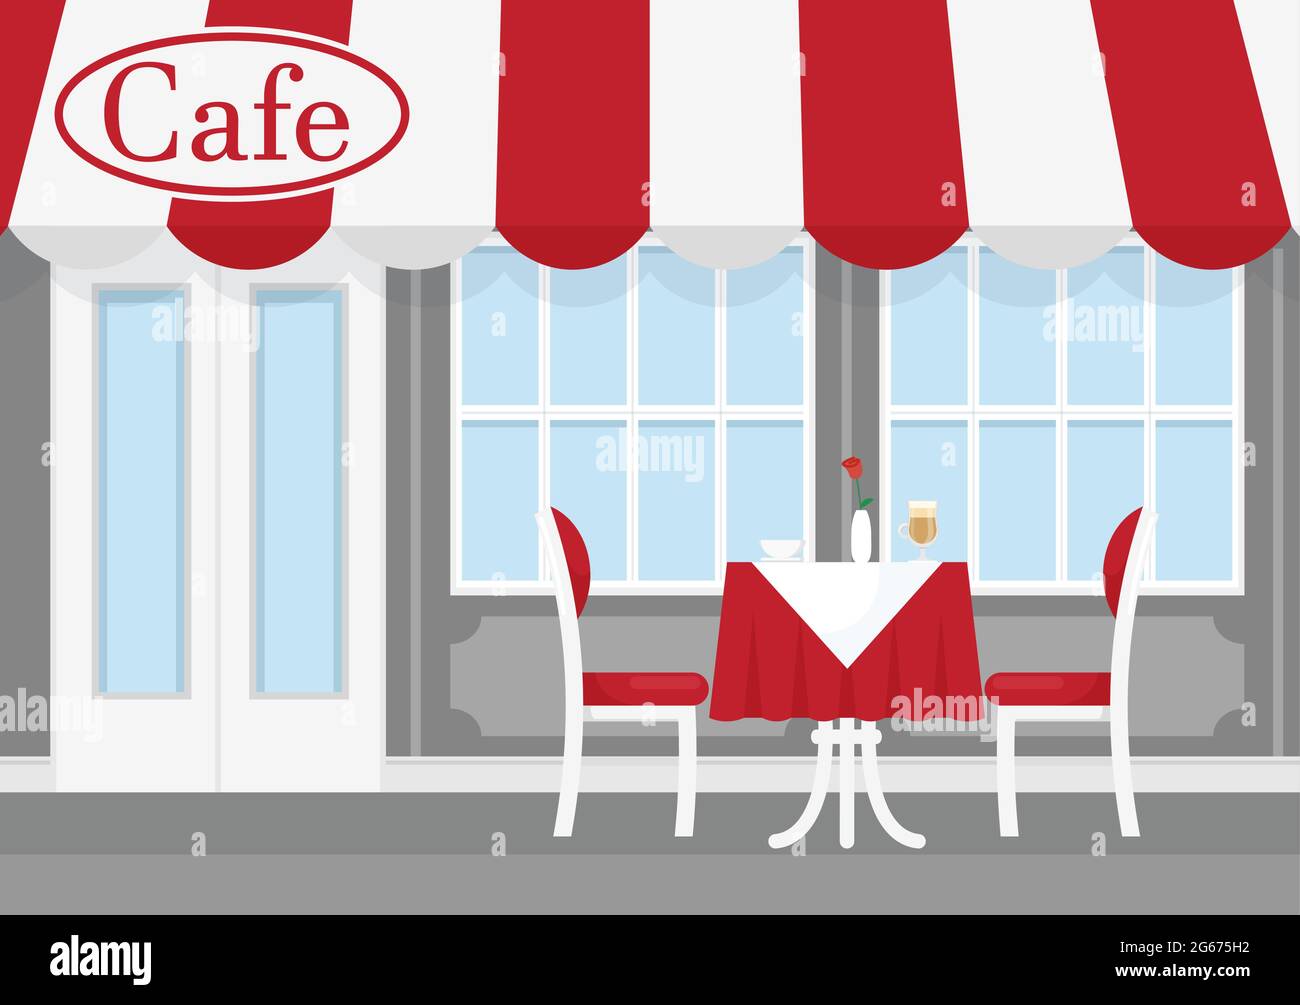 Illustrazione vettoriale del caffè di strada con tenda a strisce rosse e bianche, con tavolo, sedie e caffè. Caffè esterno del ristorante in cartoni animati piatti Illustrazione Vettoriale